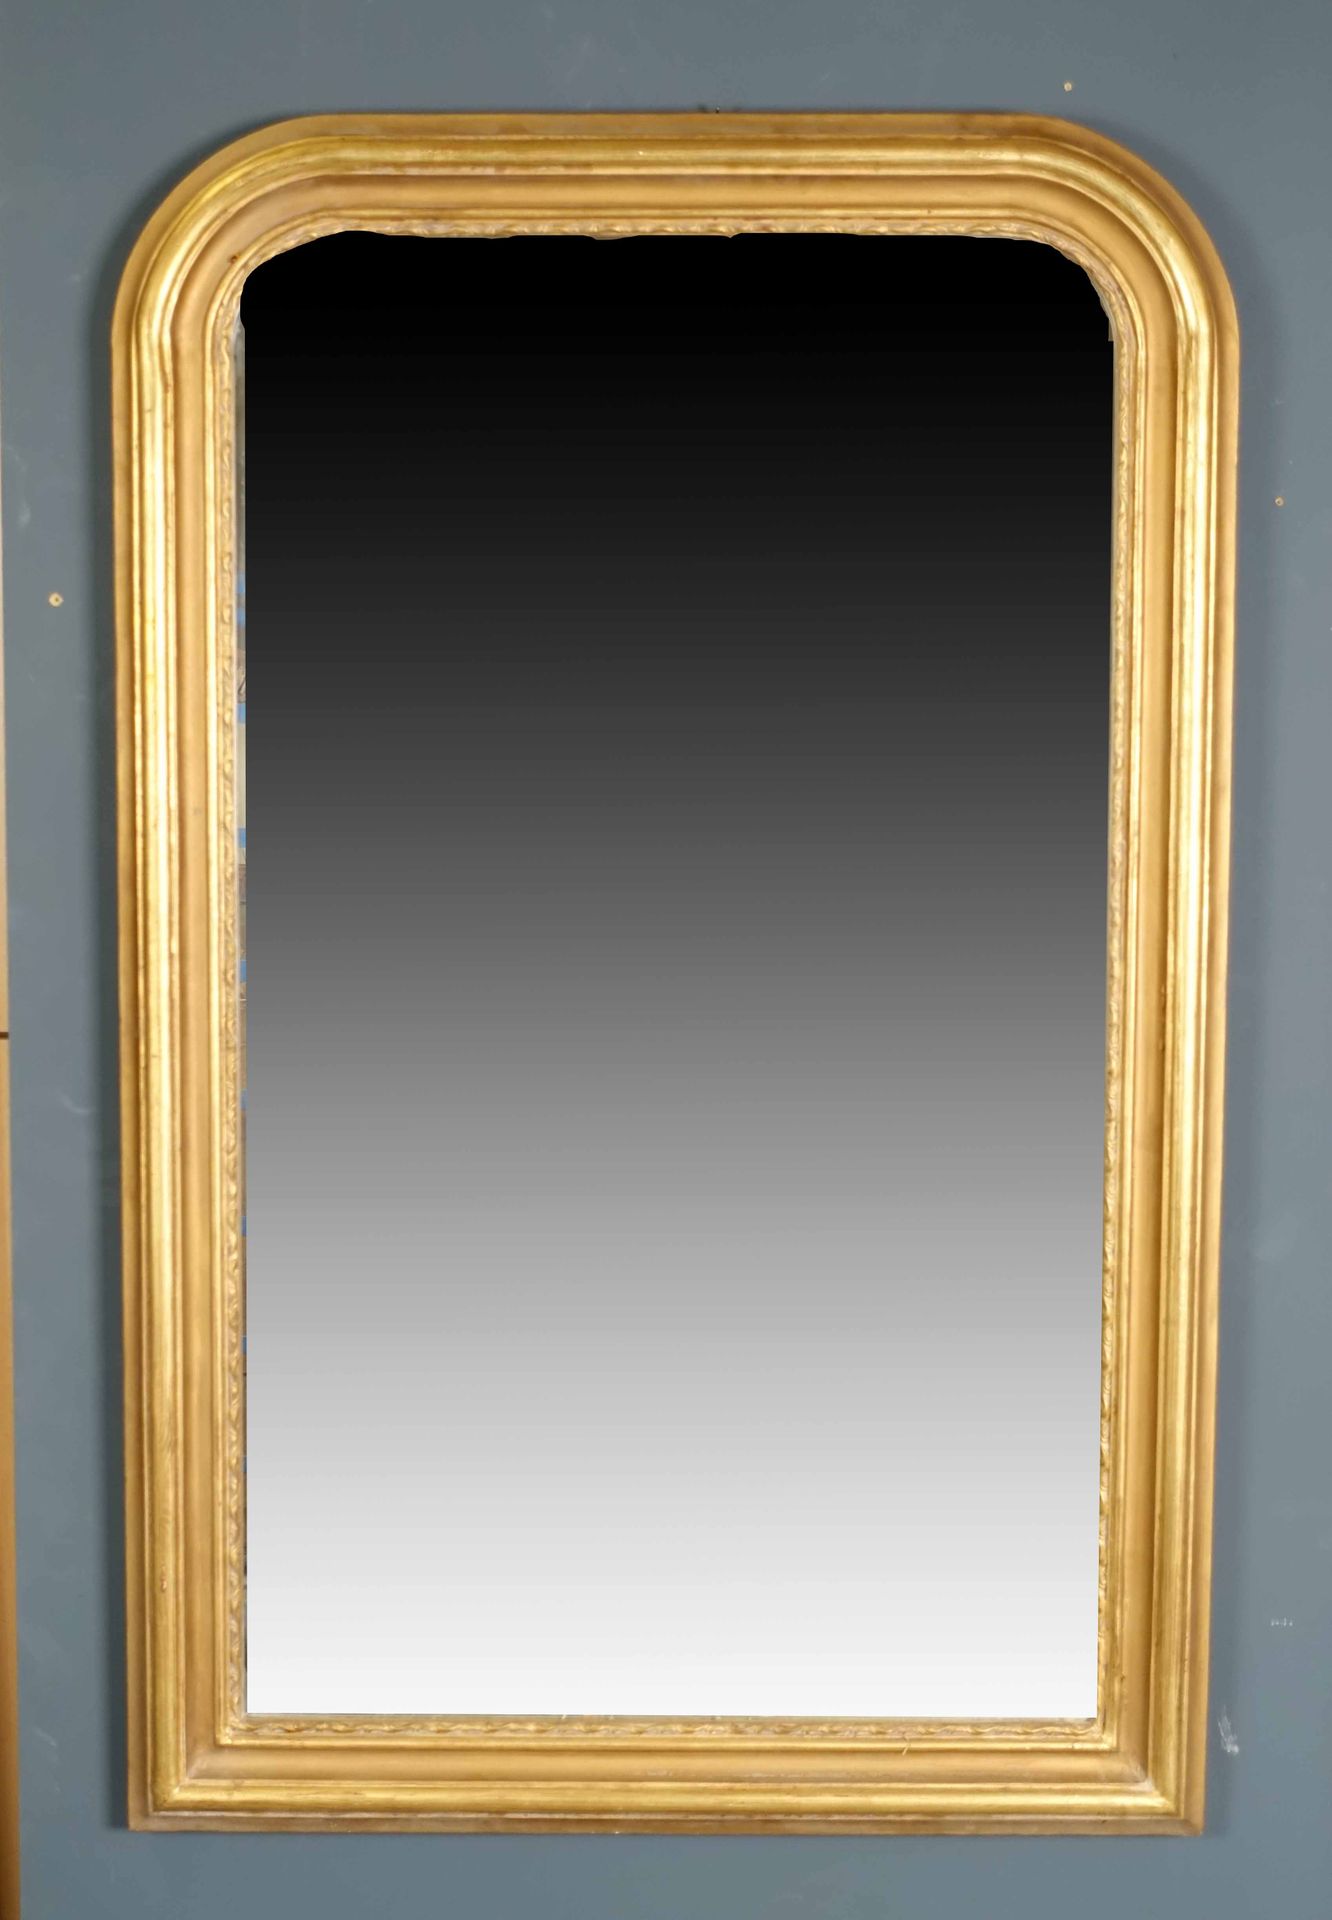 Miroir de Cheminée. Geformter Rahmen. Vergoldetes Holz. Größe : 137 x 91 cm.